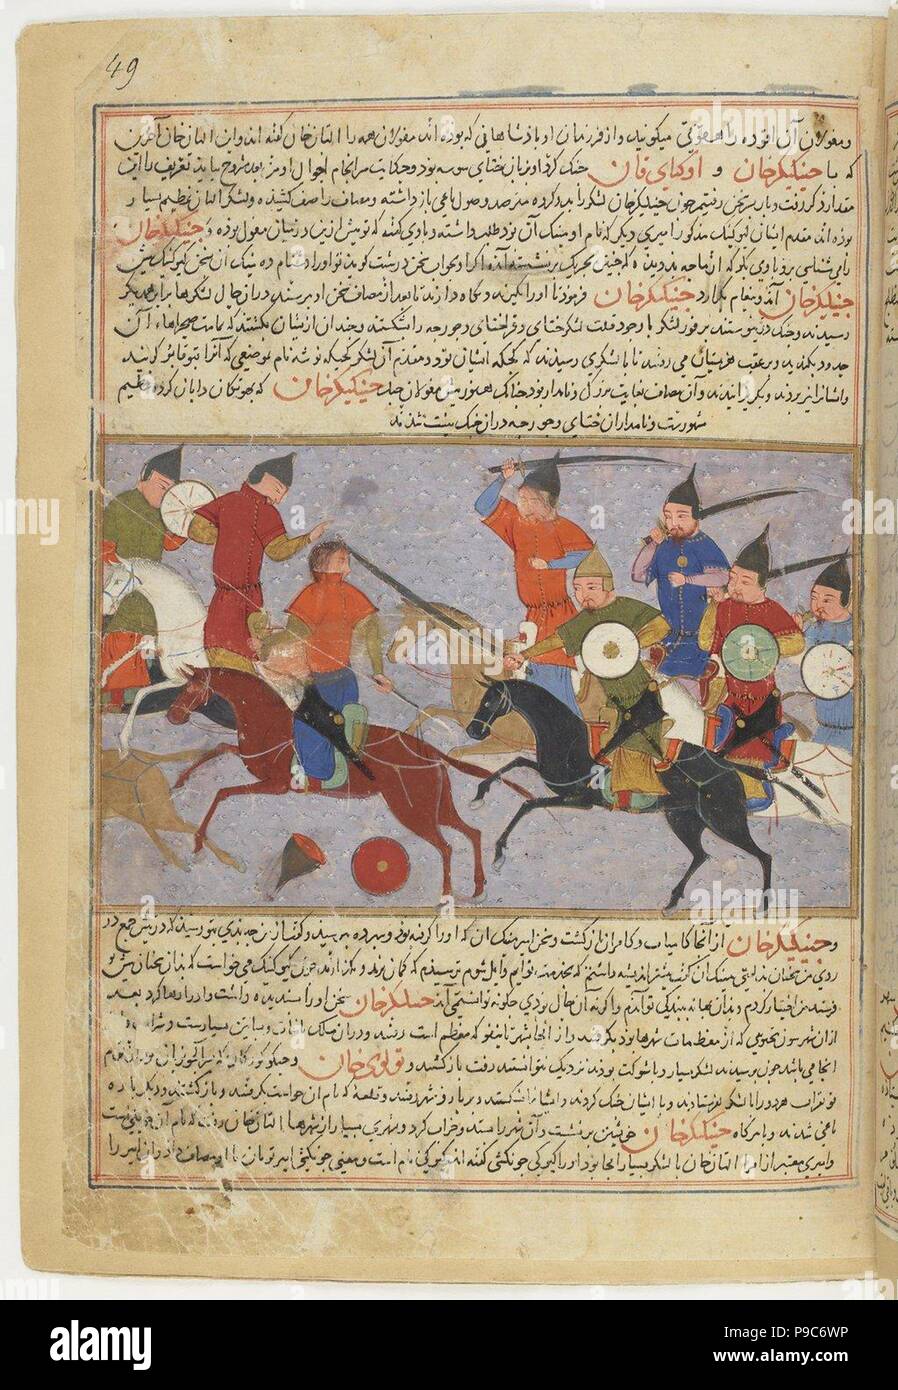 Schlacht zwischen den Mongolischen und Jin Jurchen Armeen in North China in 1211. Miniatur aus Jami' al-Tawarikh (Universal Geschichte). Museum: BIBLIOTHEQUE NATIONALE DE FRANCE. Stockfoto